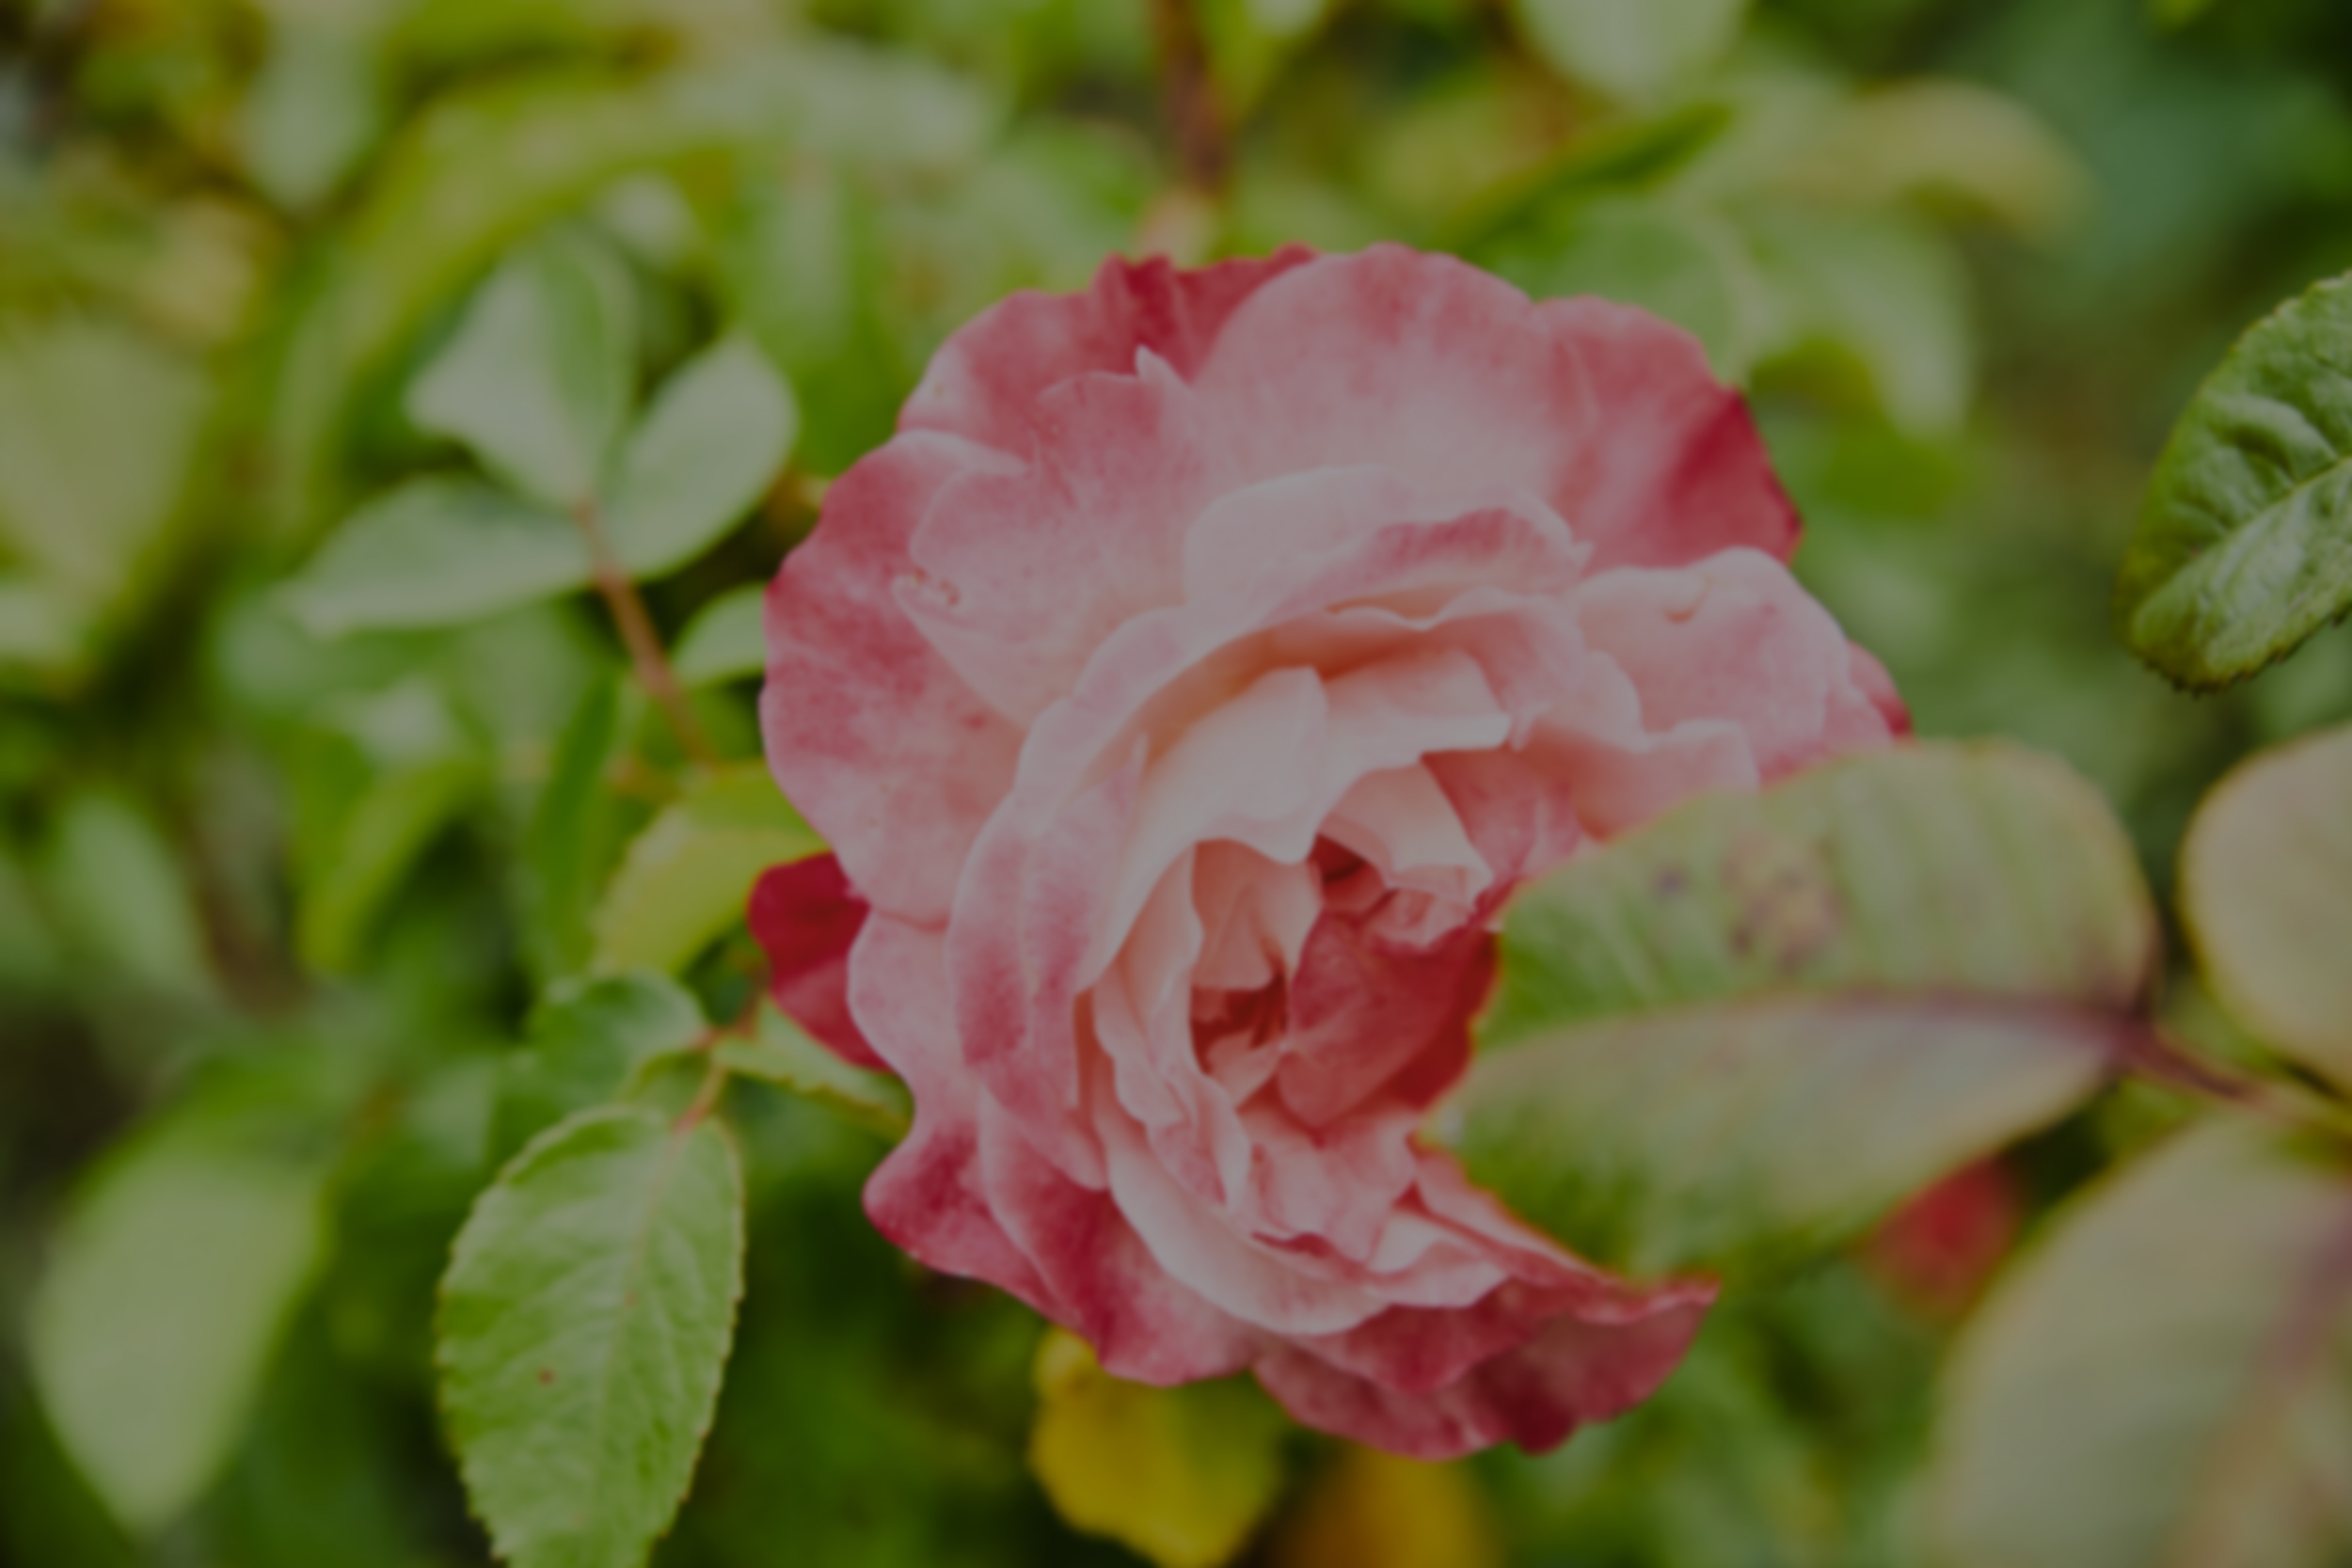 Grande plano de uma flor rosa